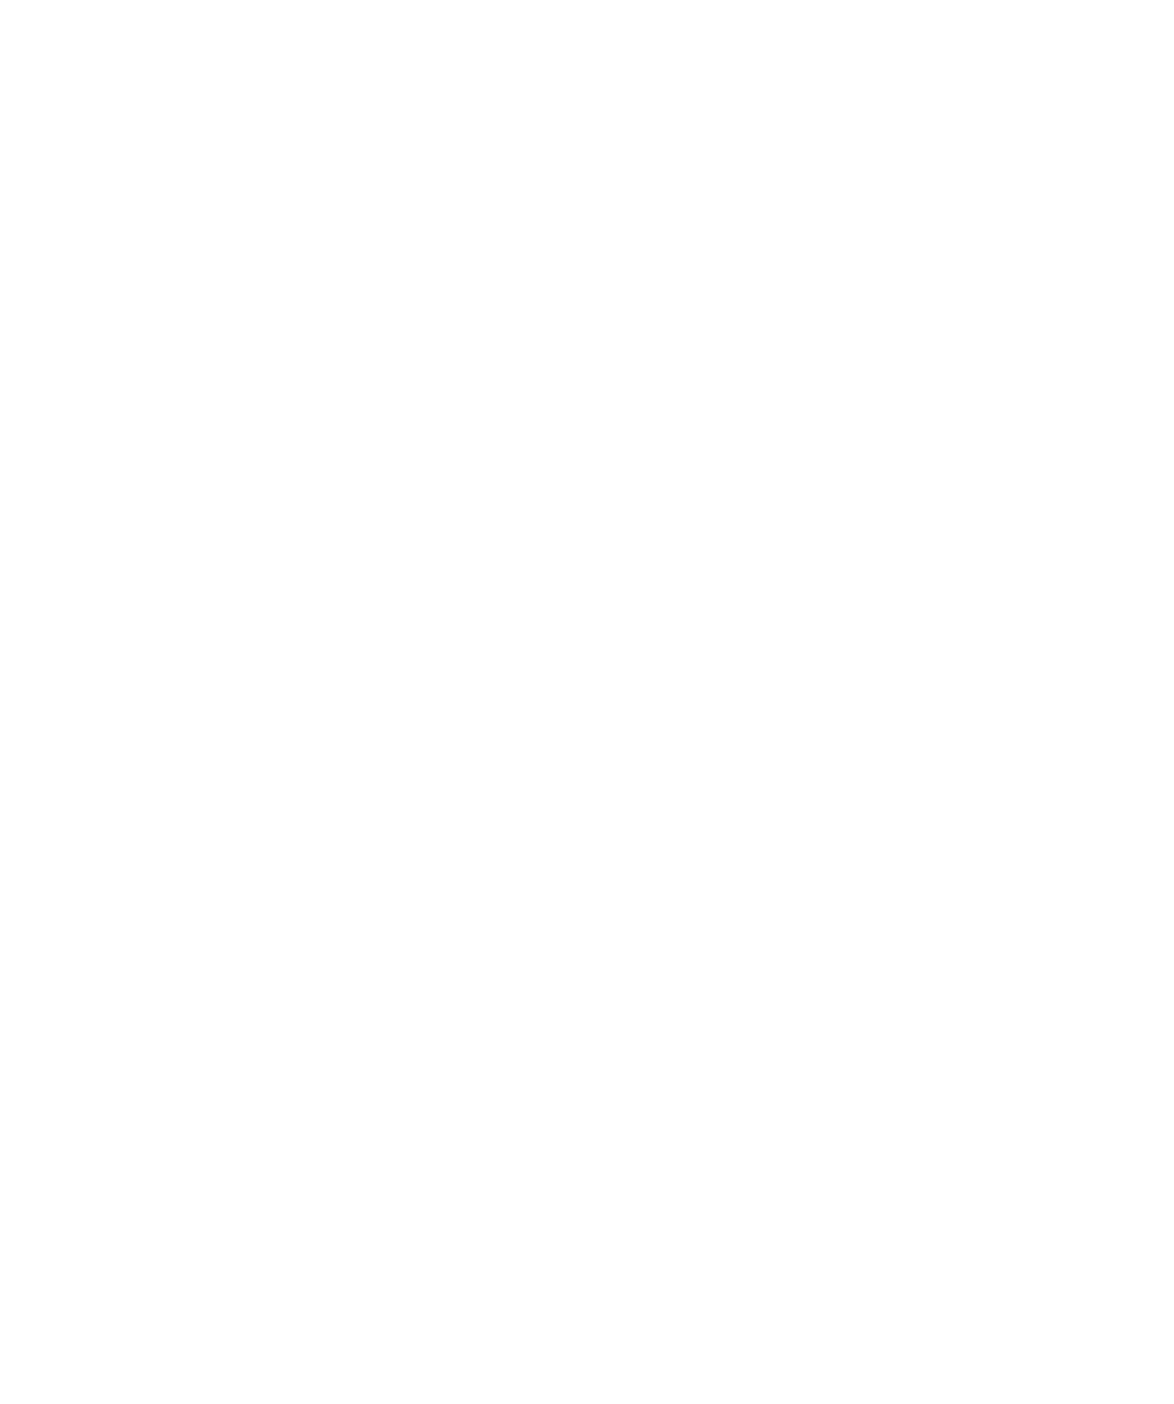 Reich Insurance